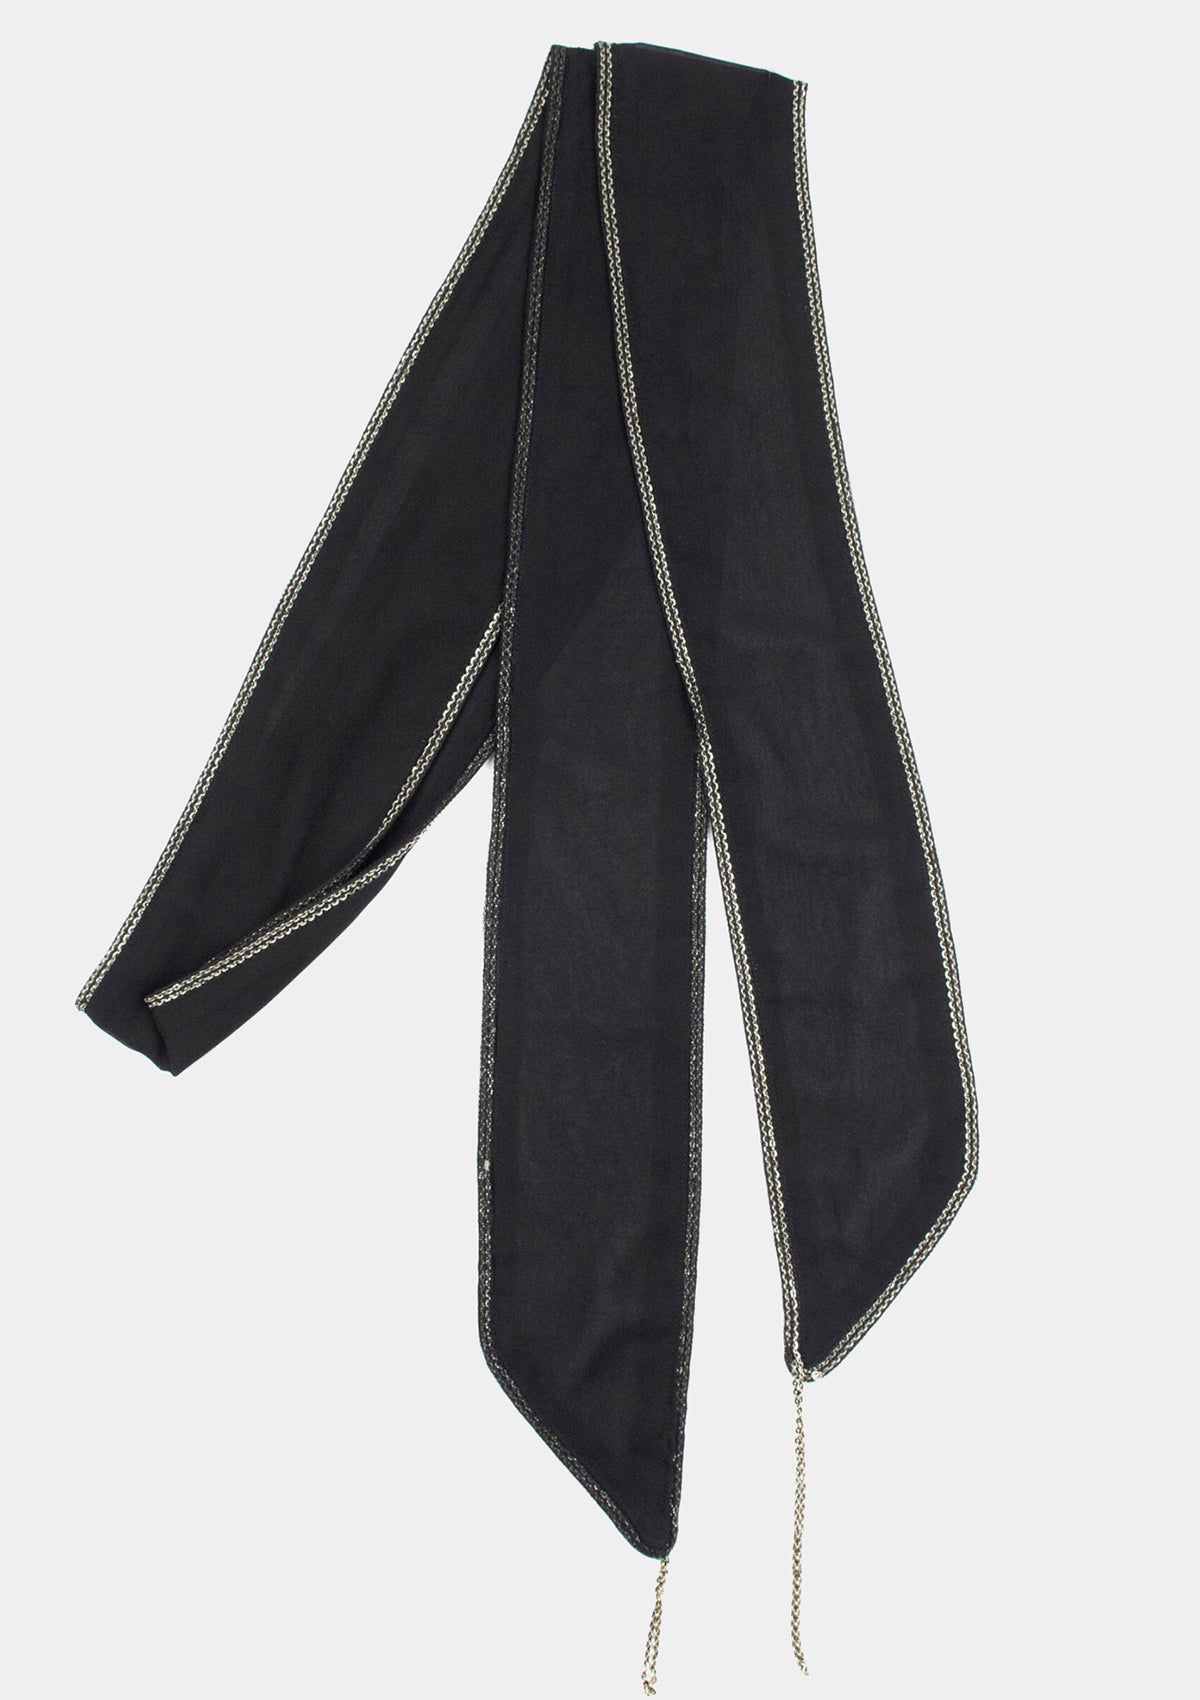 Chain silk leather necktie